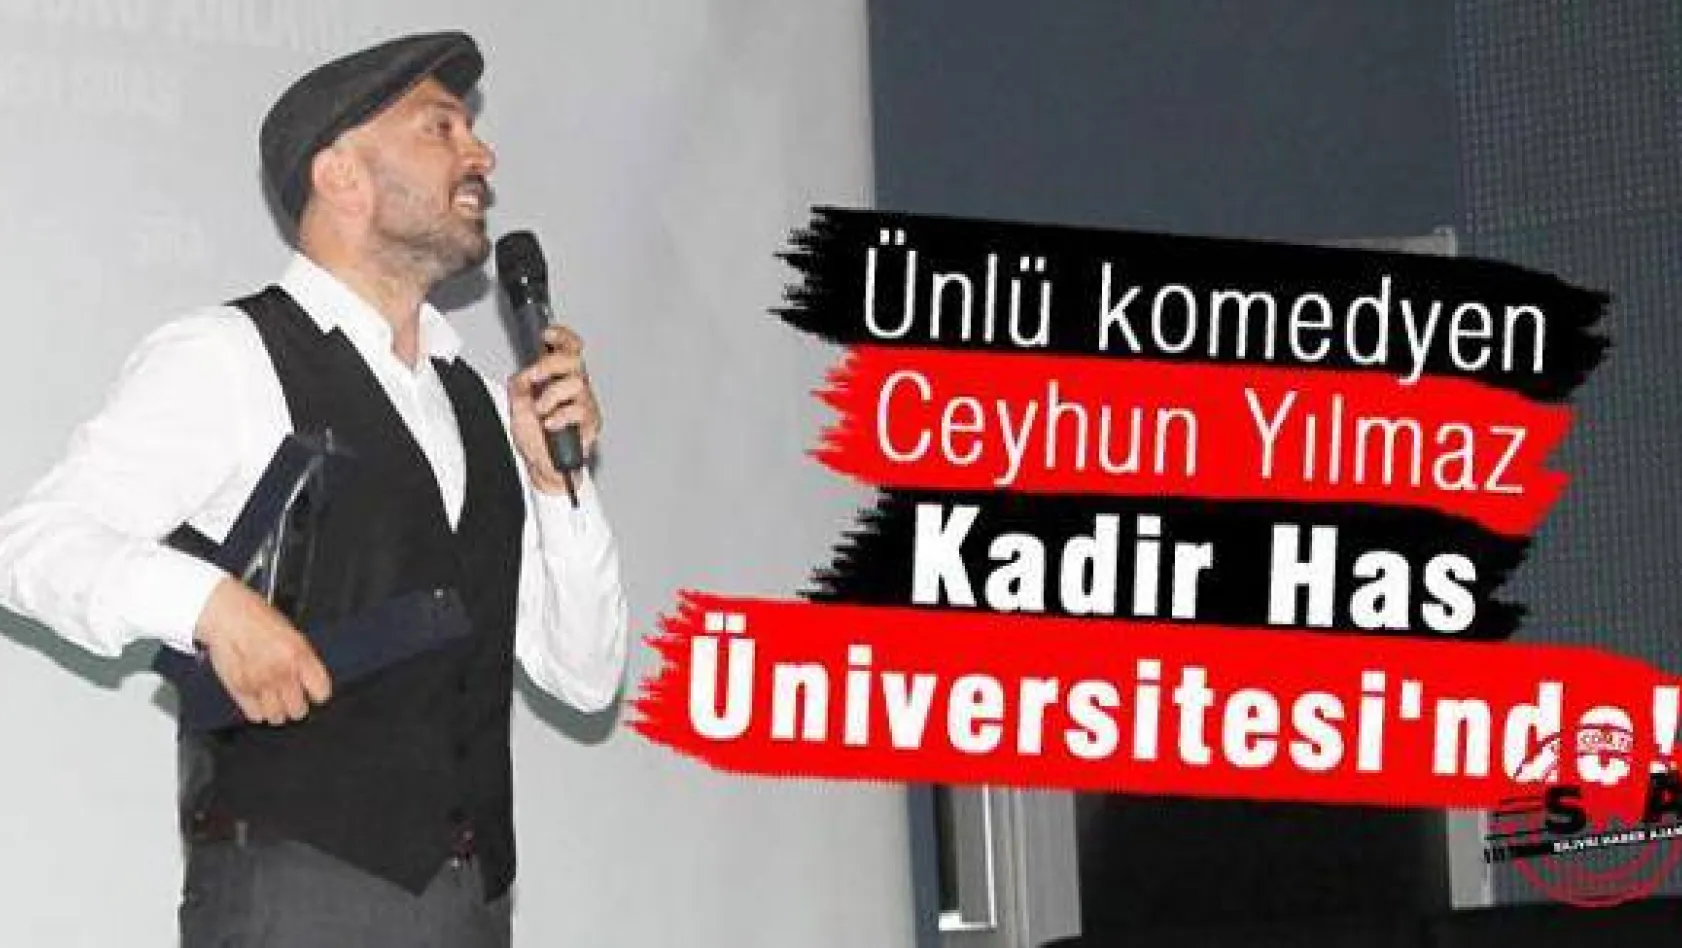 Ünlü komedyen Kadir Has Üniversitesi'nde!